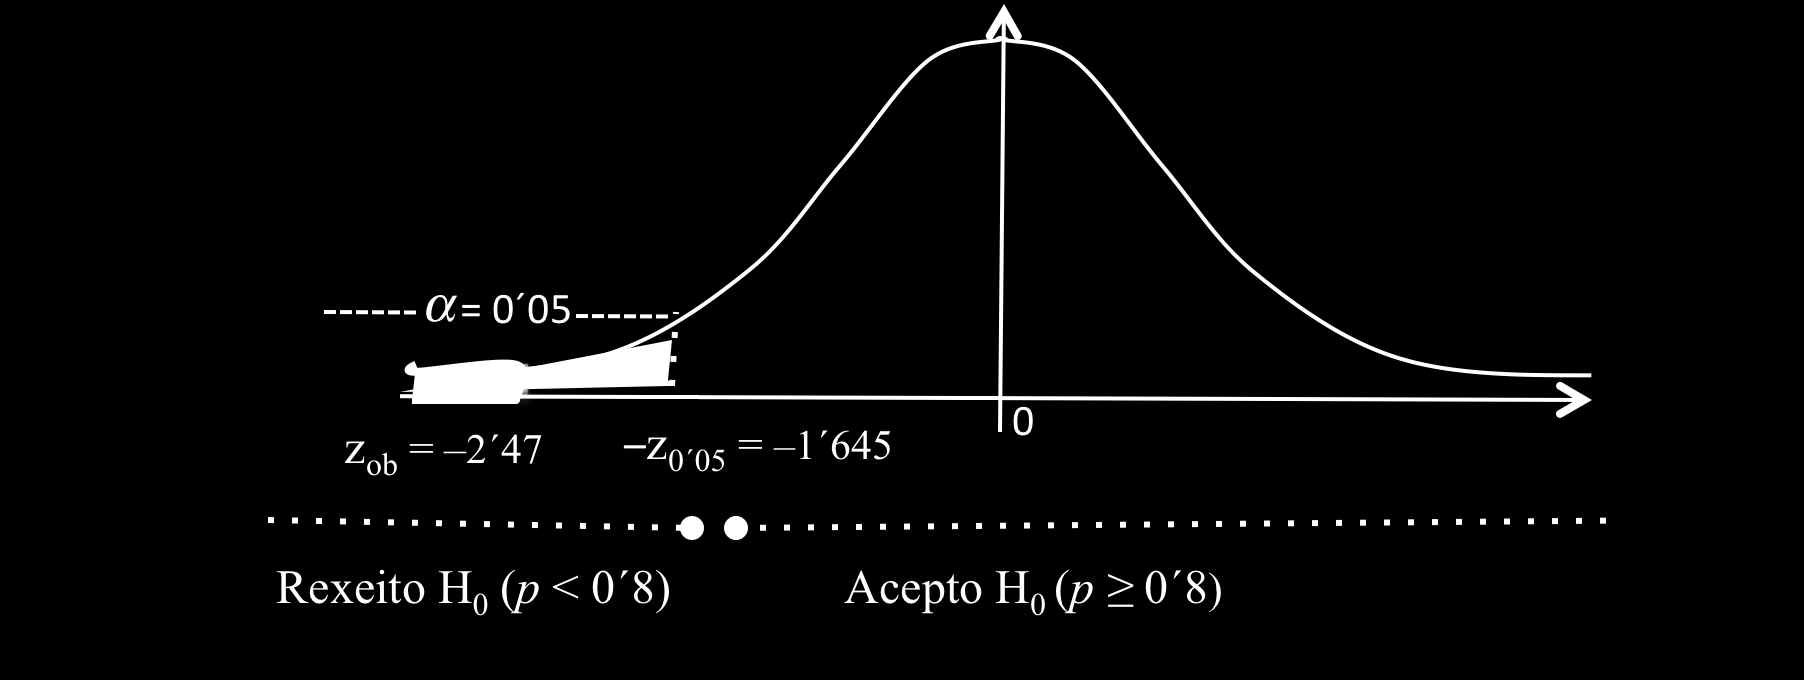 Establecer a rexión crítica, para α = 0 05, (, 1 645) Decidir se se acepta ou se rexeita a hipótese nula z ob = 2 47 < z crít = 1 645 Rexeito H 0 Conclusión: Cun risco de equivocarnos dun 5%, podemos